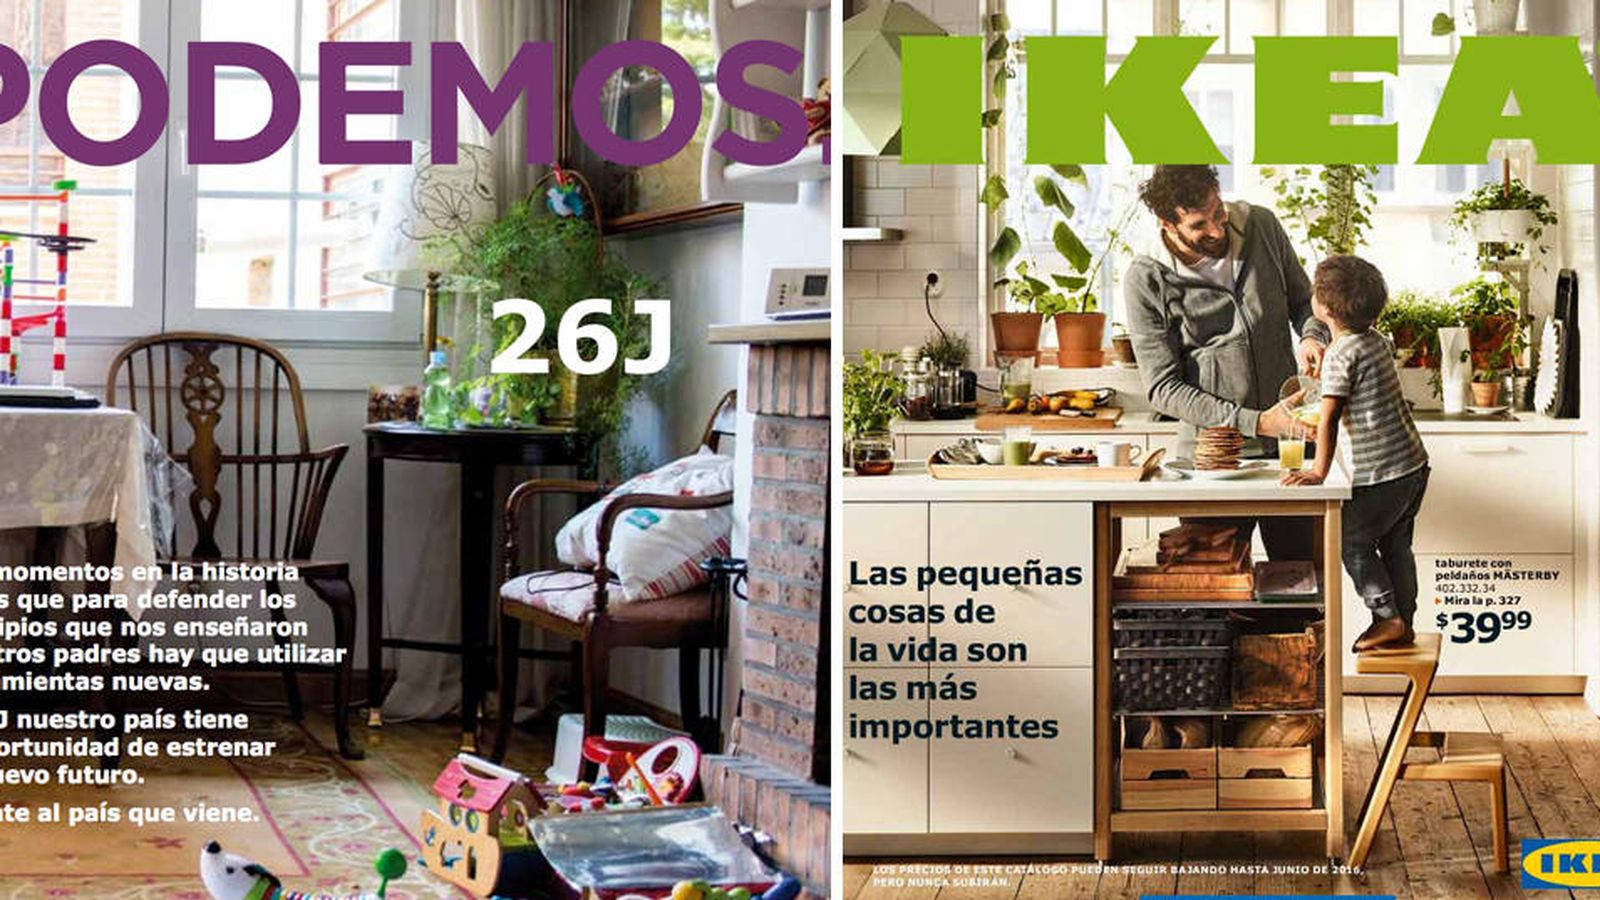 Foto: El programa de Podemos y el catálogo de IKEA